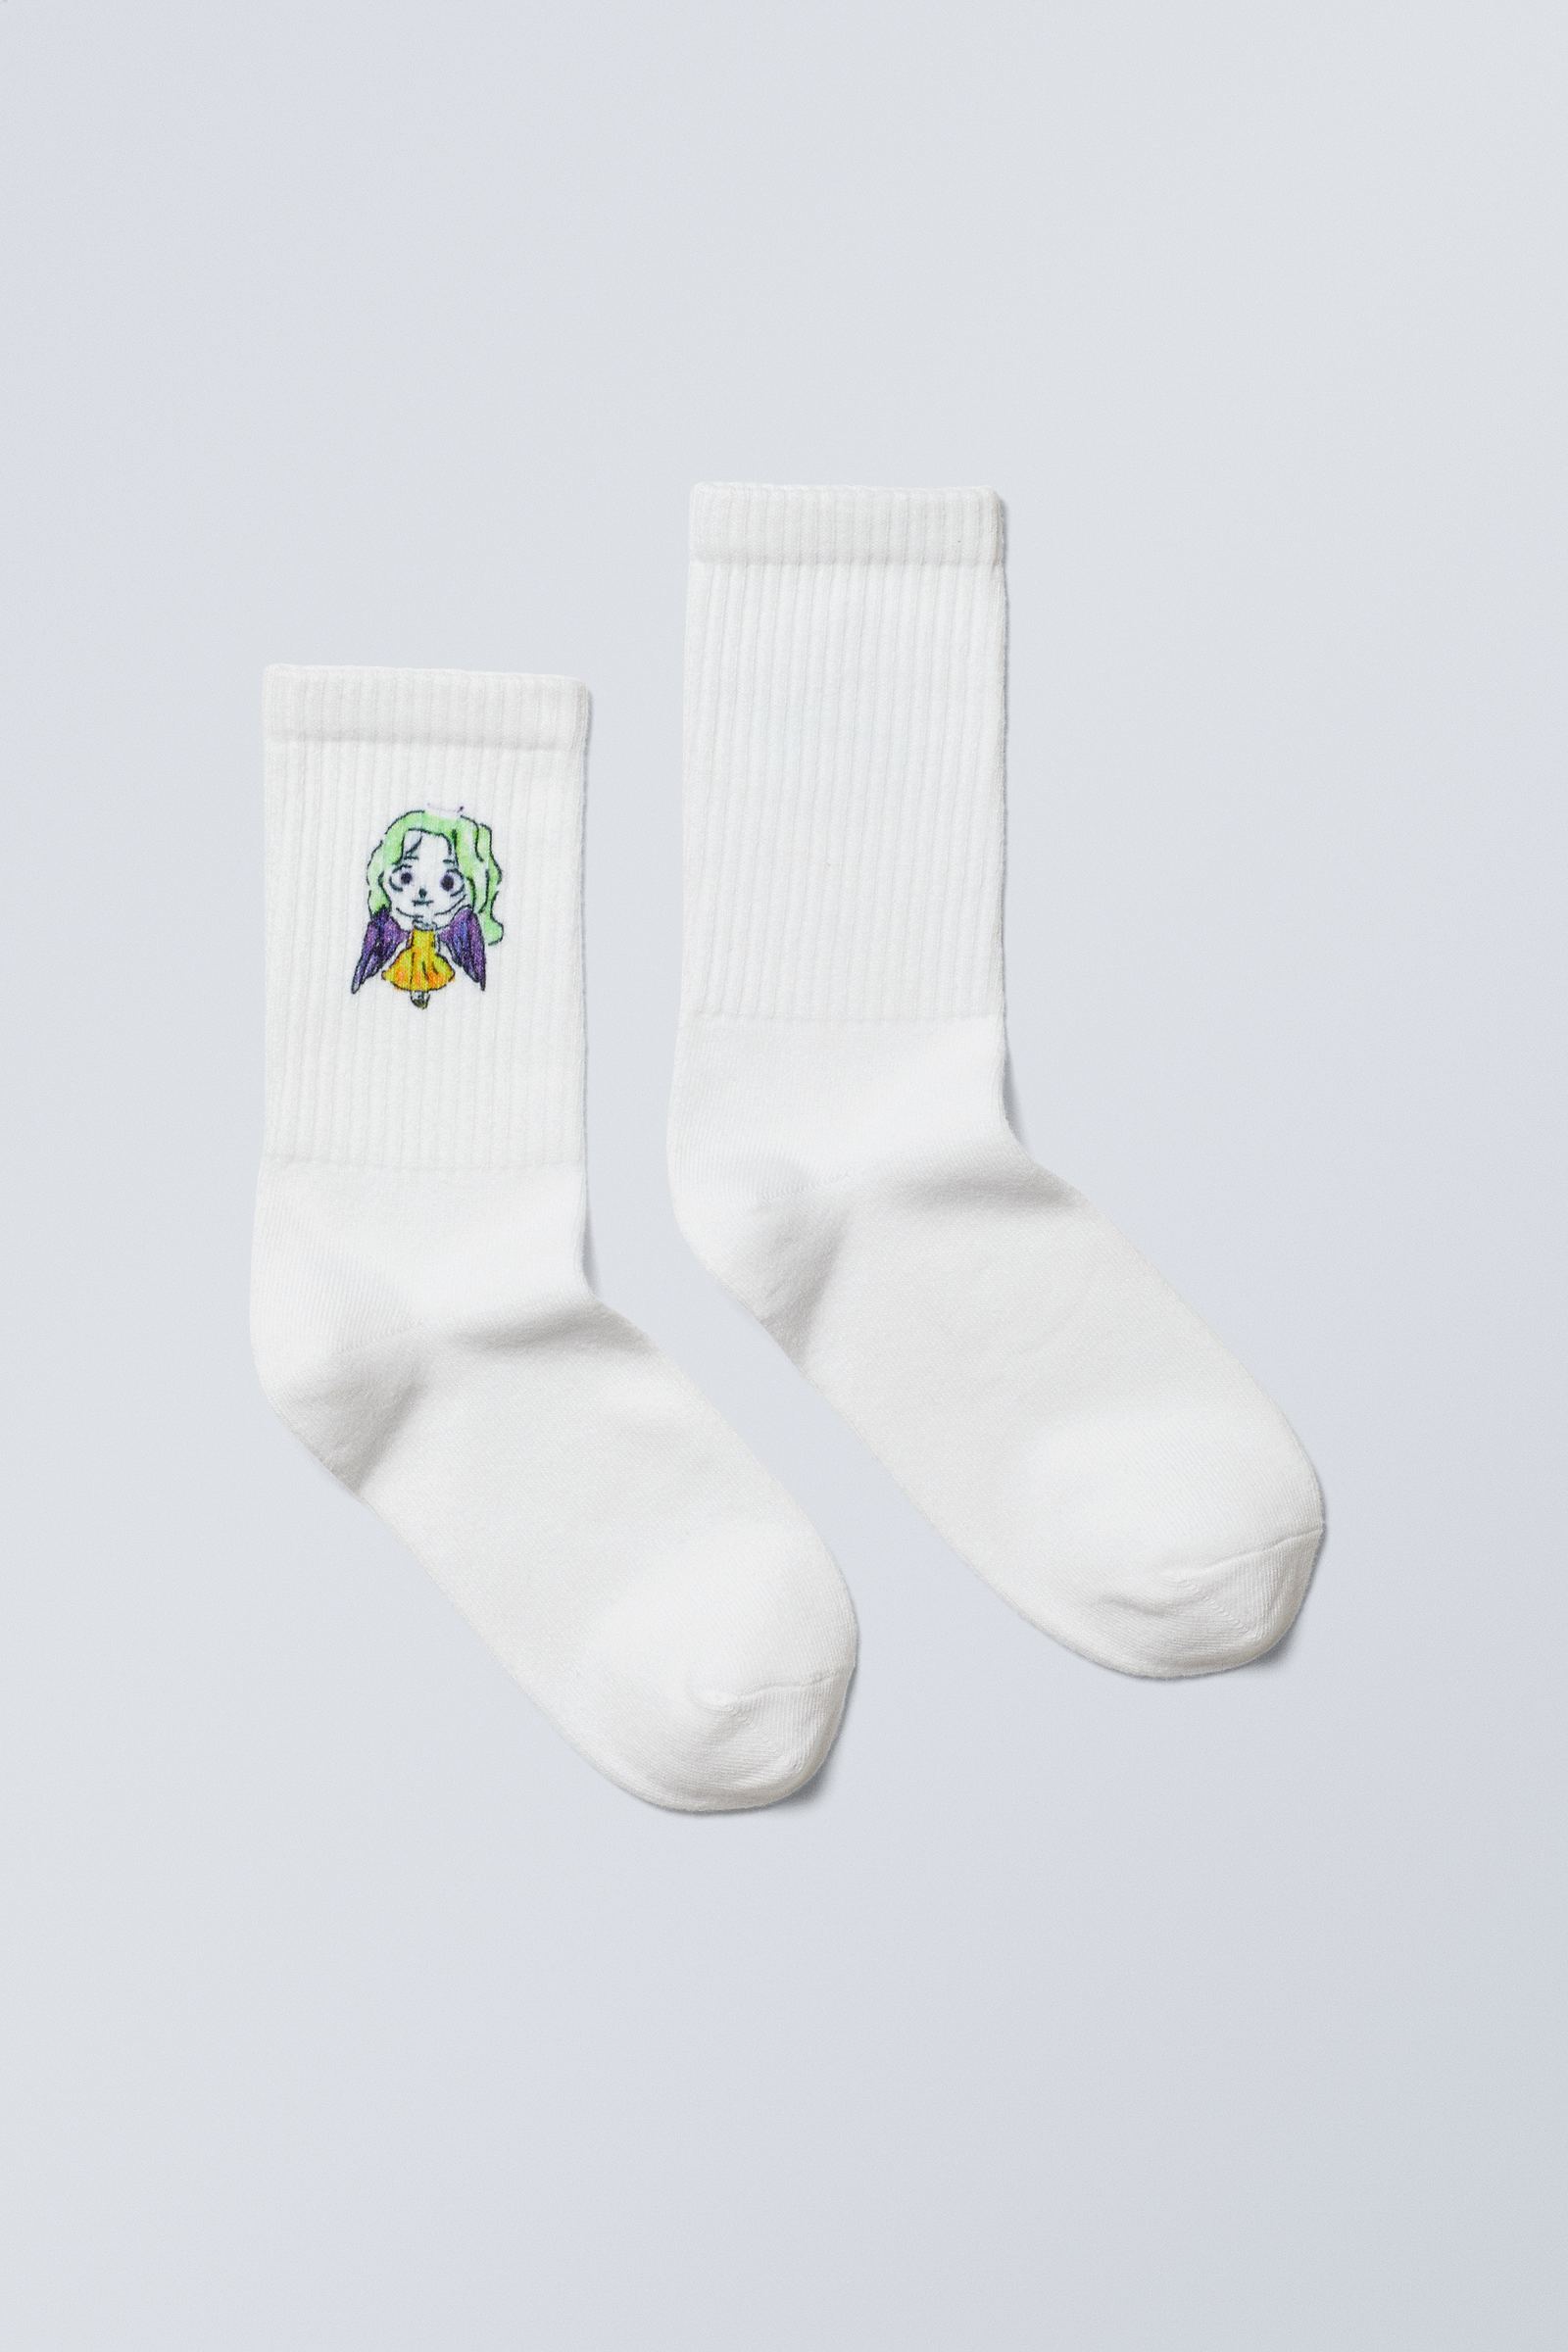 #FFFFFF - Sport Printed Socks